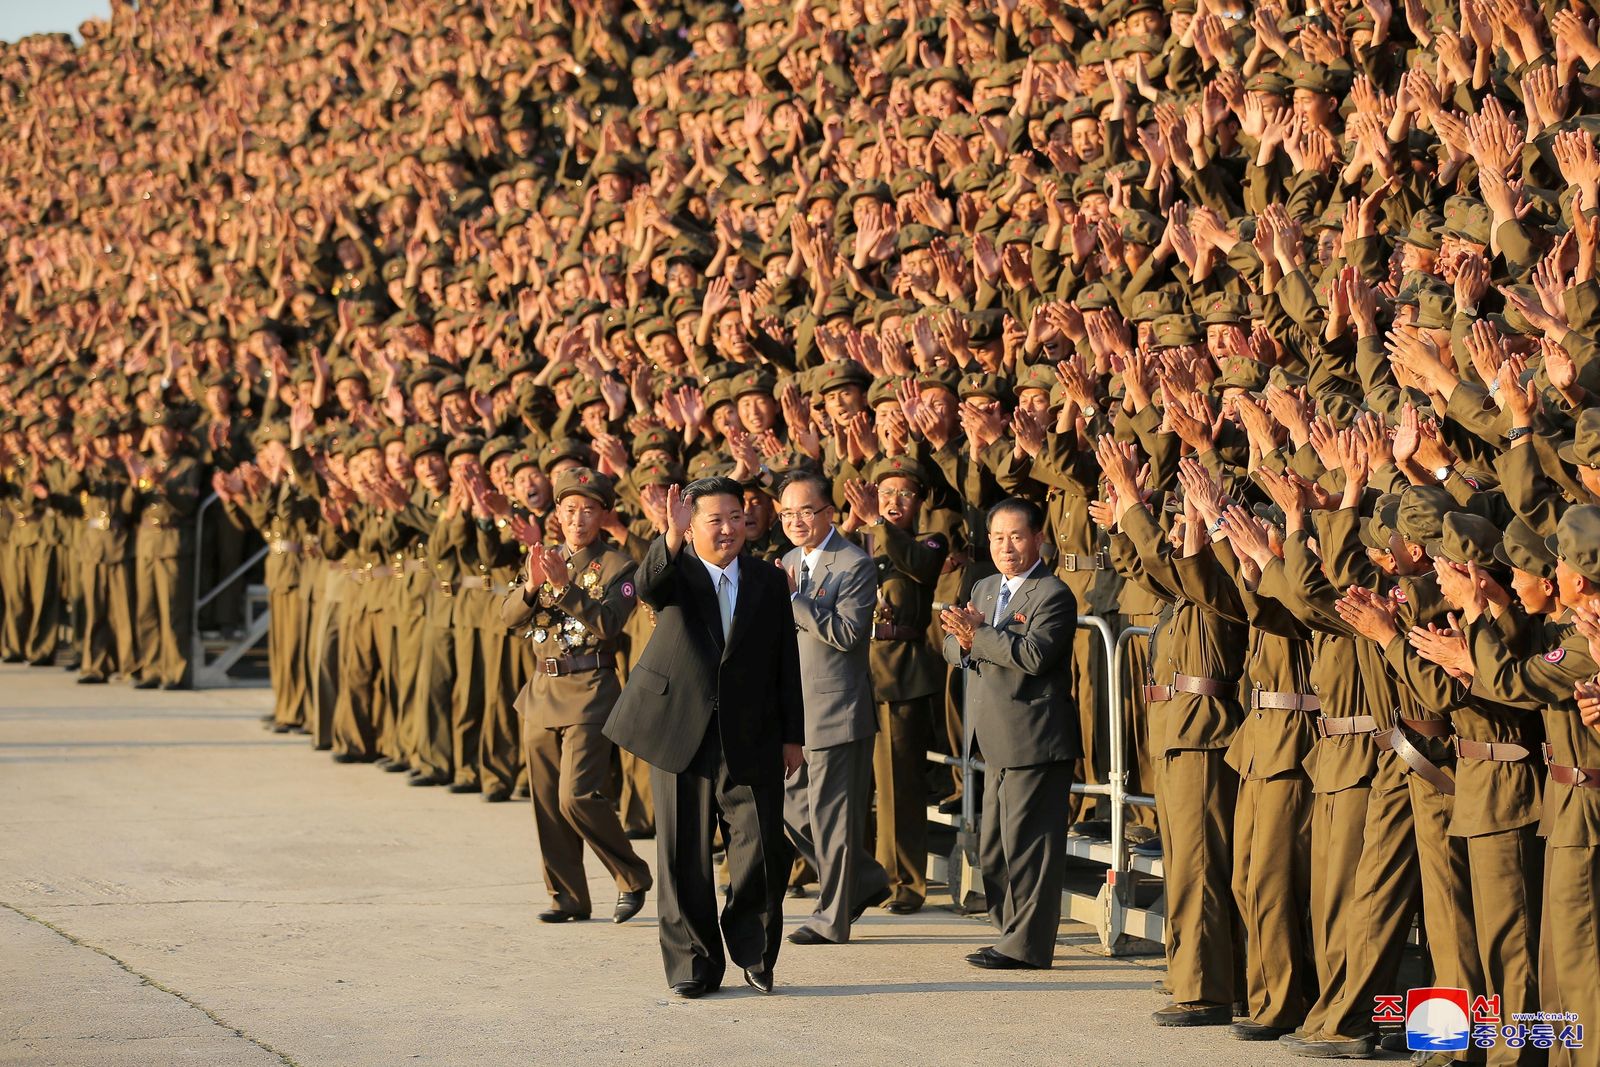 الزعيم الكوري الشمالي كيم جونغ أون يحيي عسكريين في ذكرى تأسيس بلاده - 9 سبتمبر 2021 - REUTERS